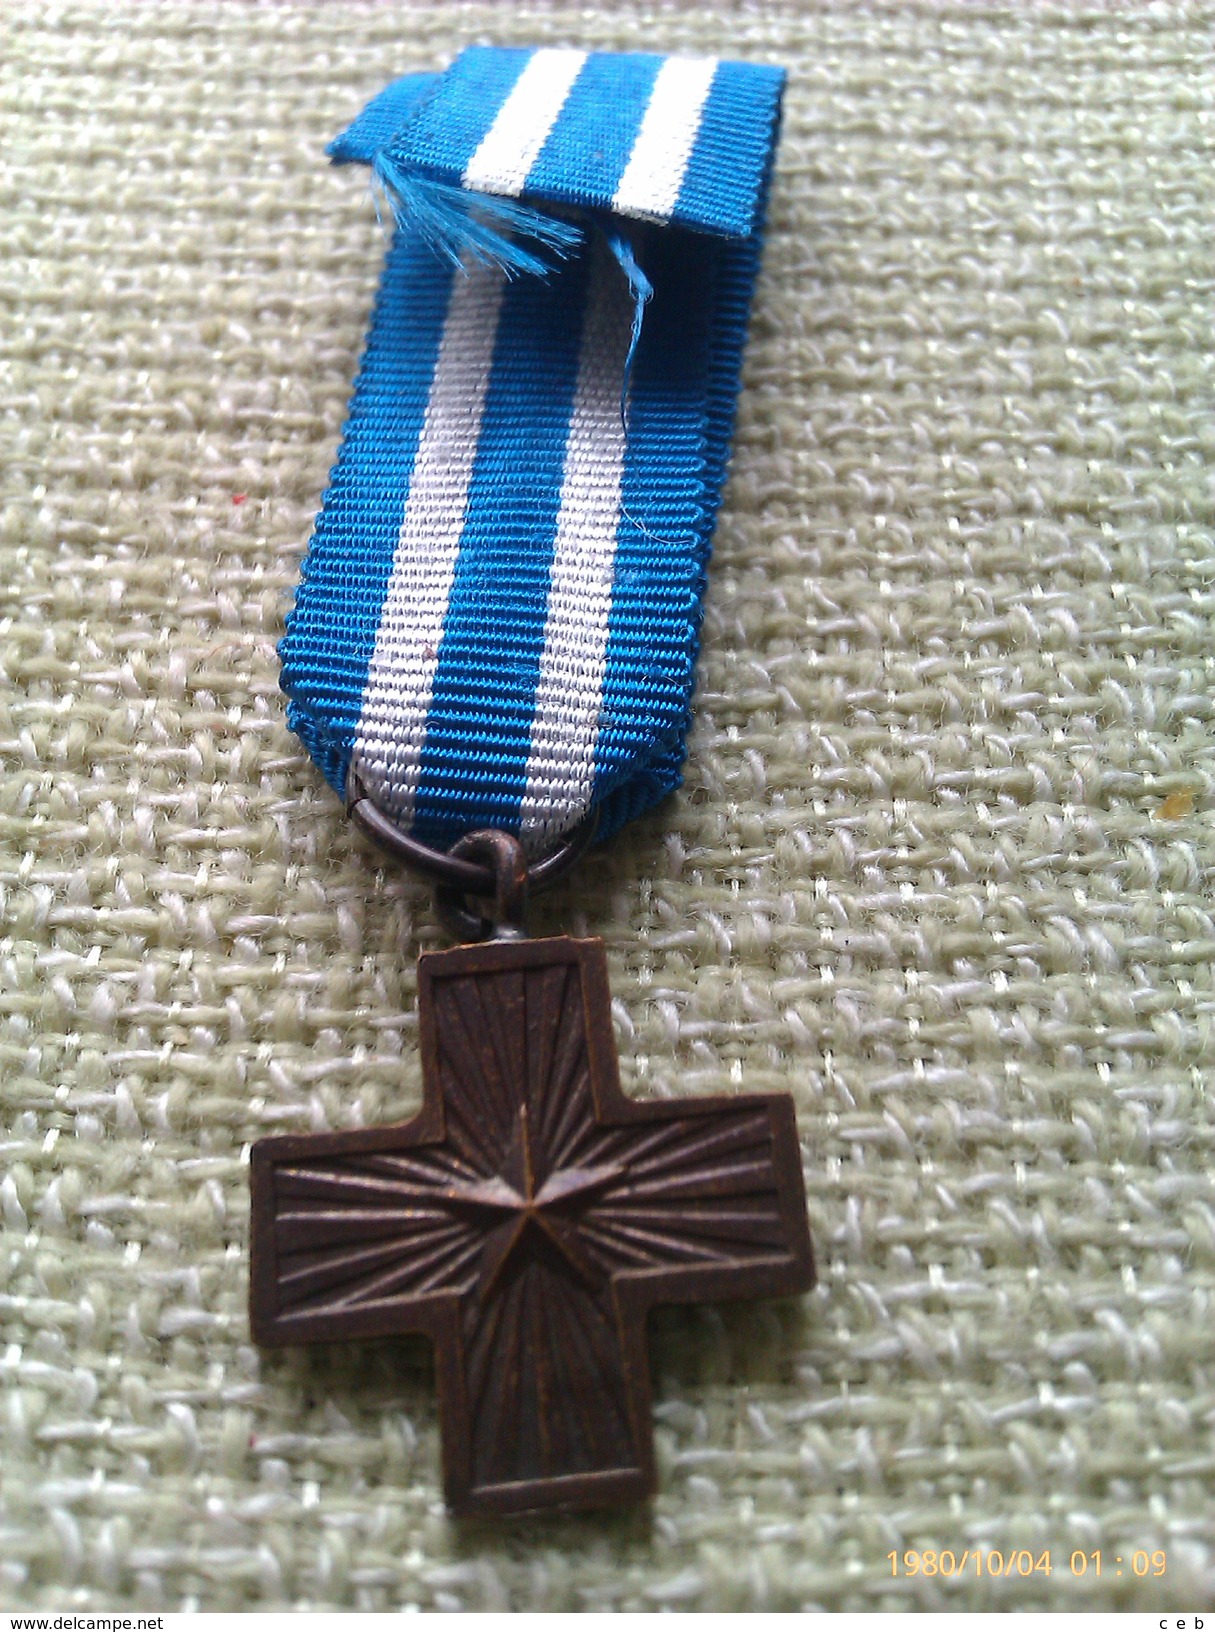 Medalla Miniatura Croce Valore Di Guerra. Italia. II Guerra Mundial. 1945. Categoría Bronce. Dada A Los Excombatientes - Italie